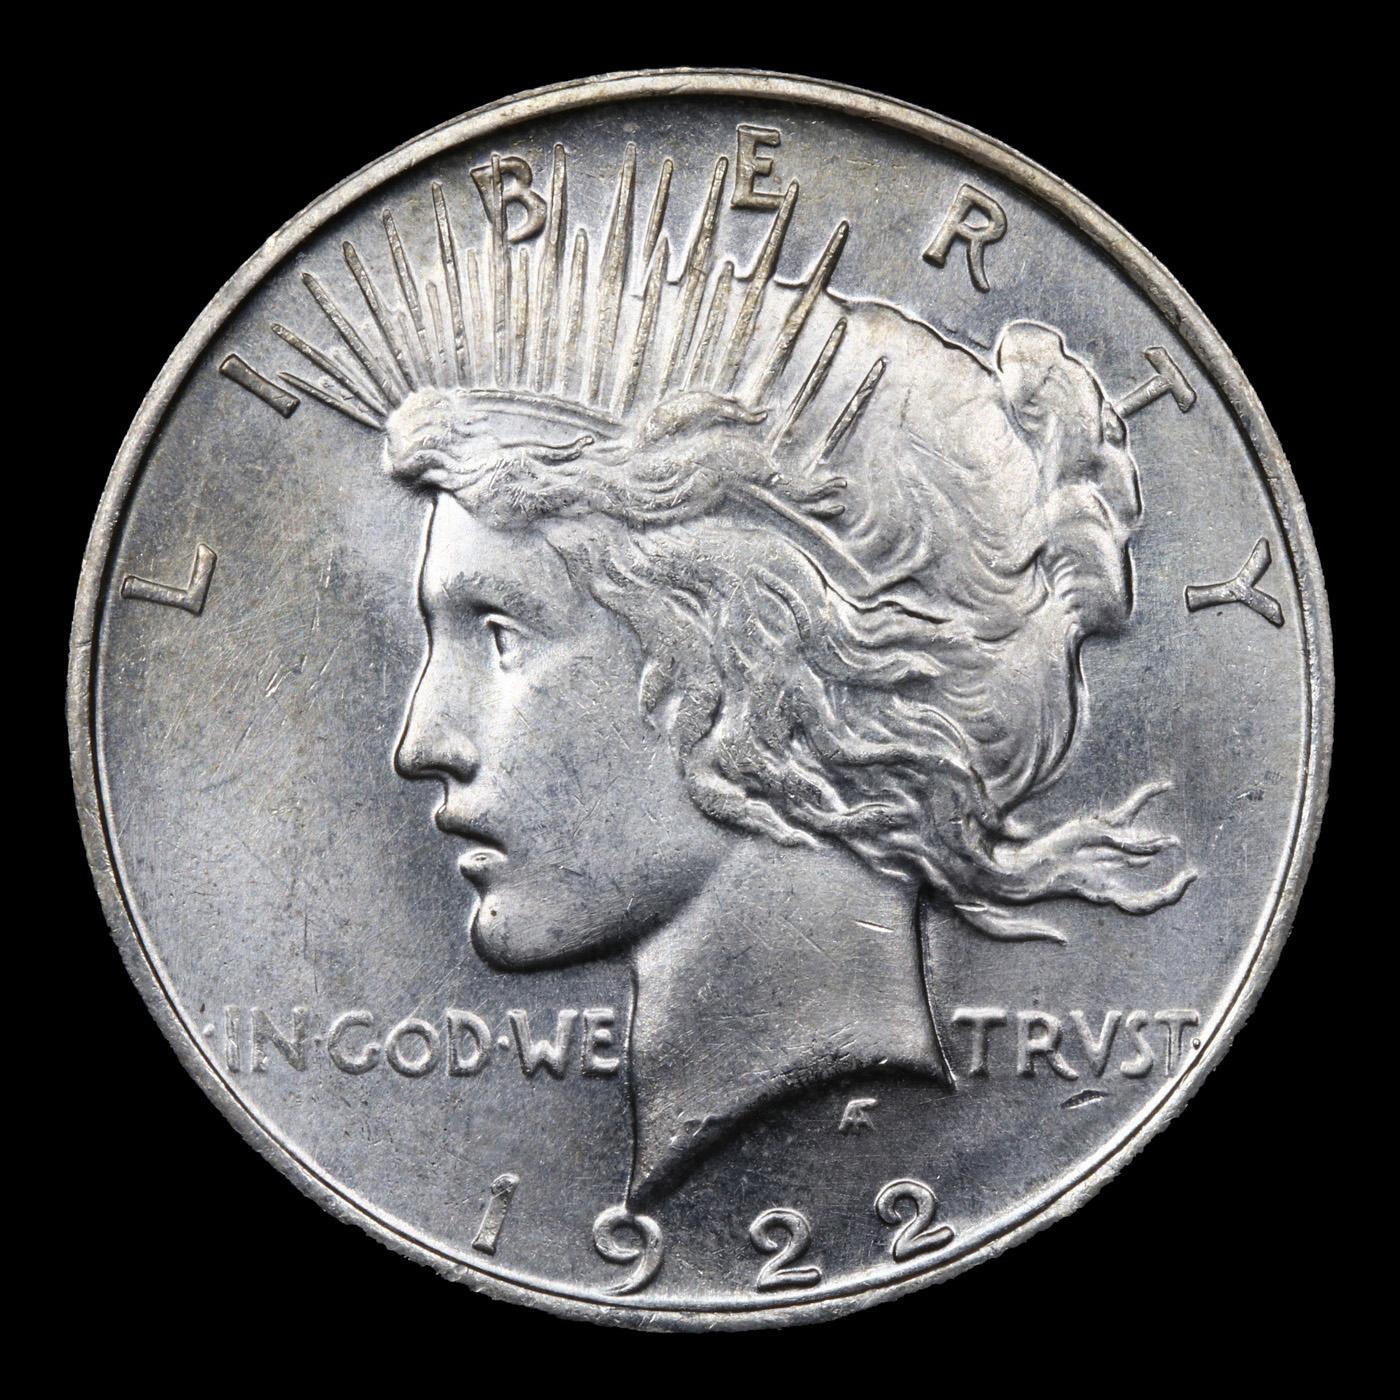 ***Auction Highlight*** 1922-d Peace Dollar $1 Graded GEM+ Unc By USCG (fc)